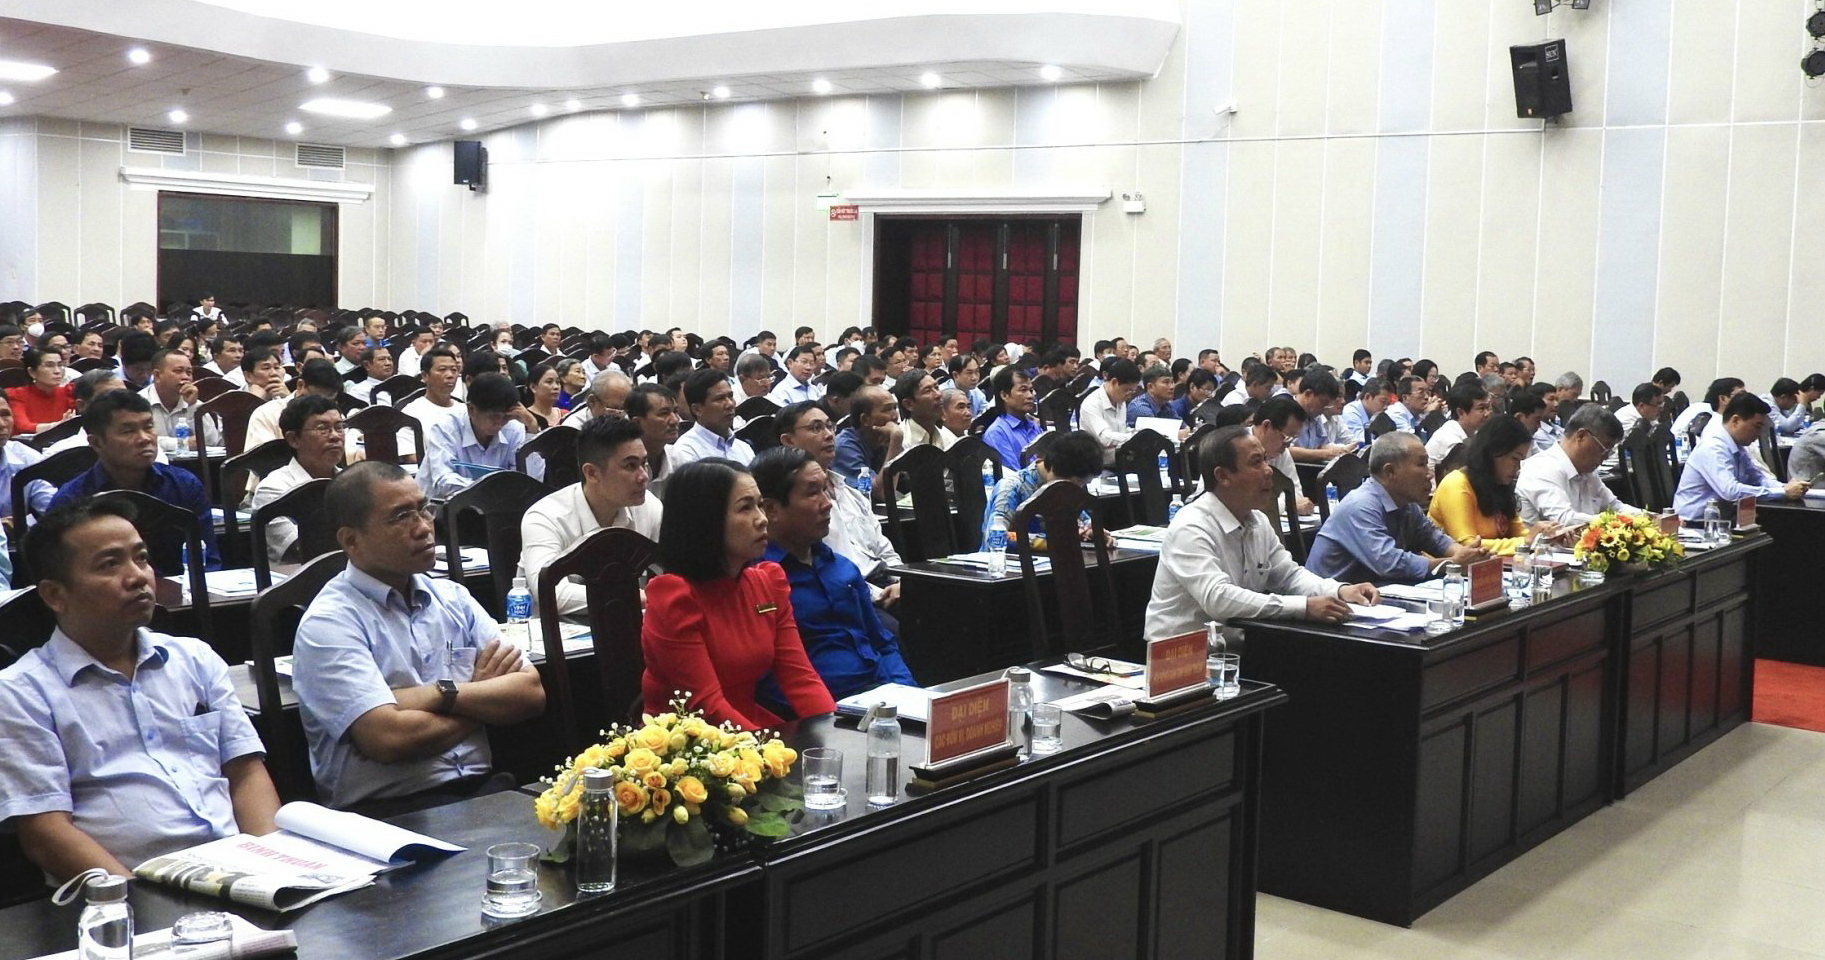 Nông dân tỉnh Bình Thuận đóng góp hơn 53,5 tỷ đồng xây dựng cơ sở hạ tầng nông thôn - Ảnh 1.